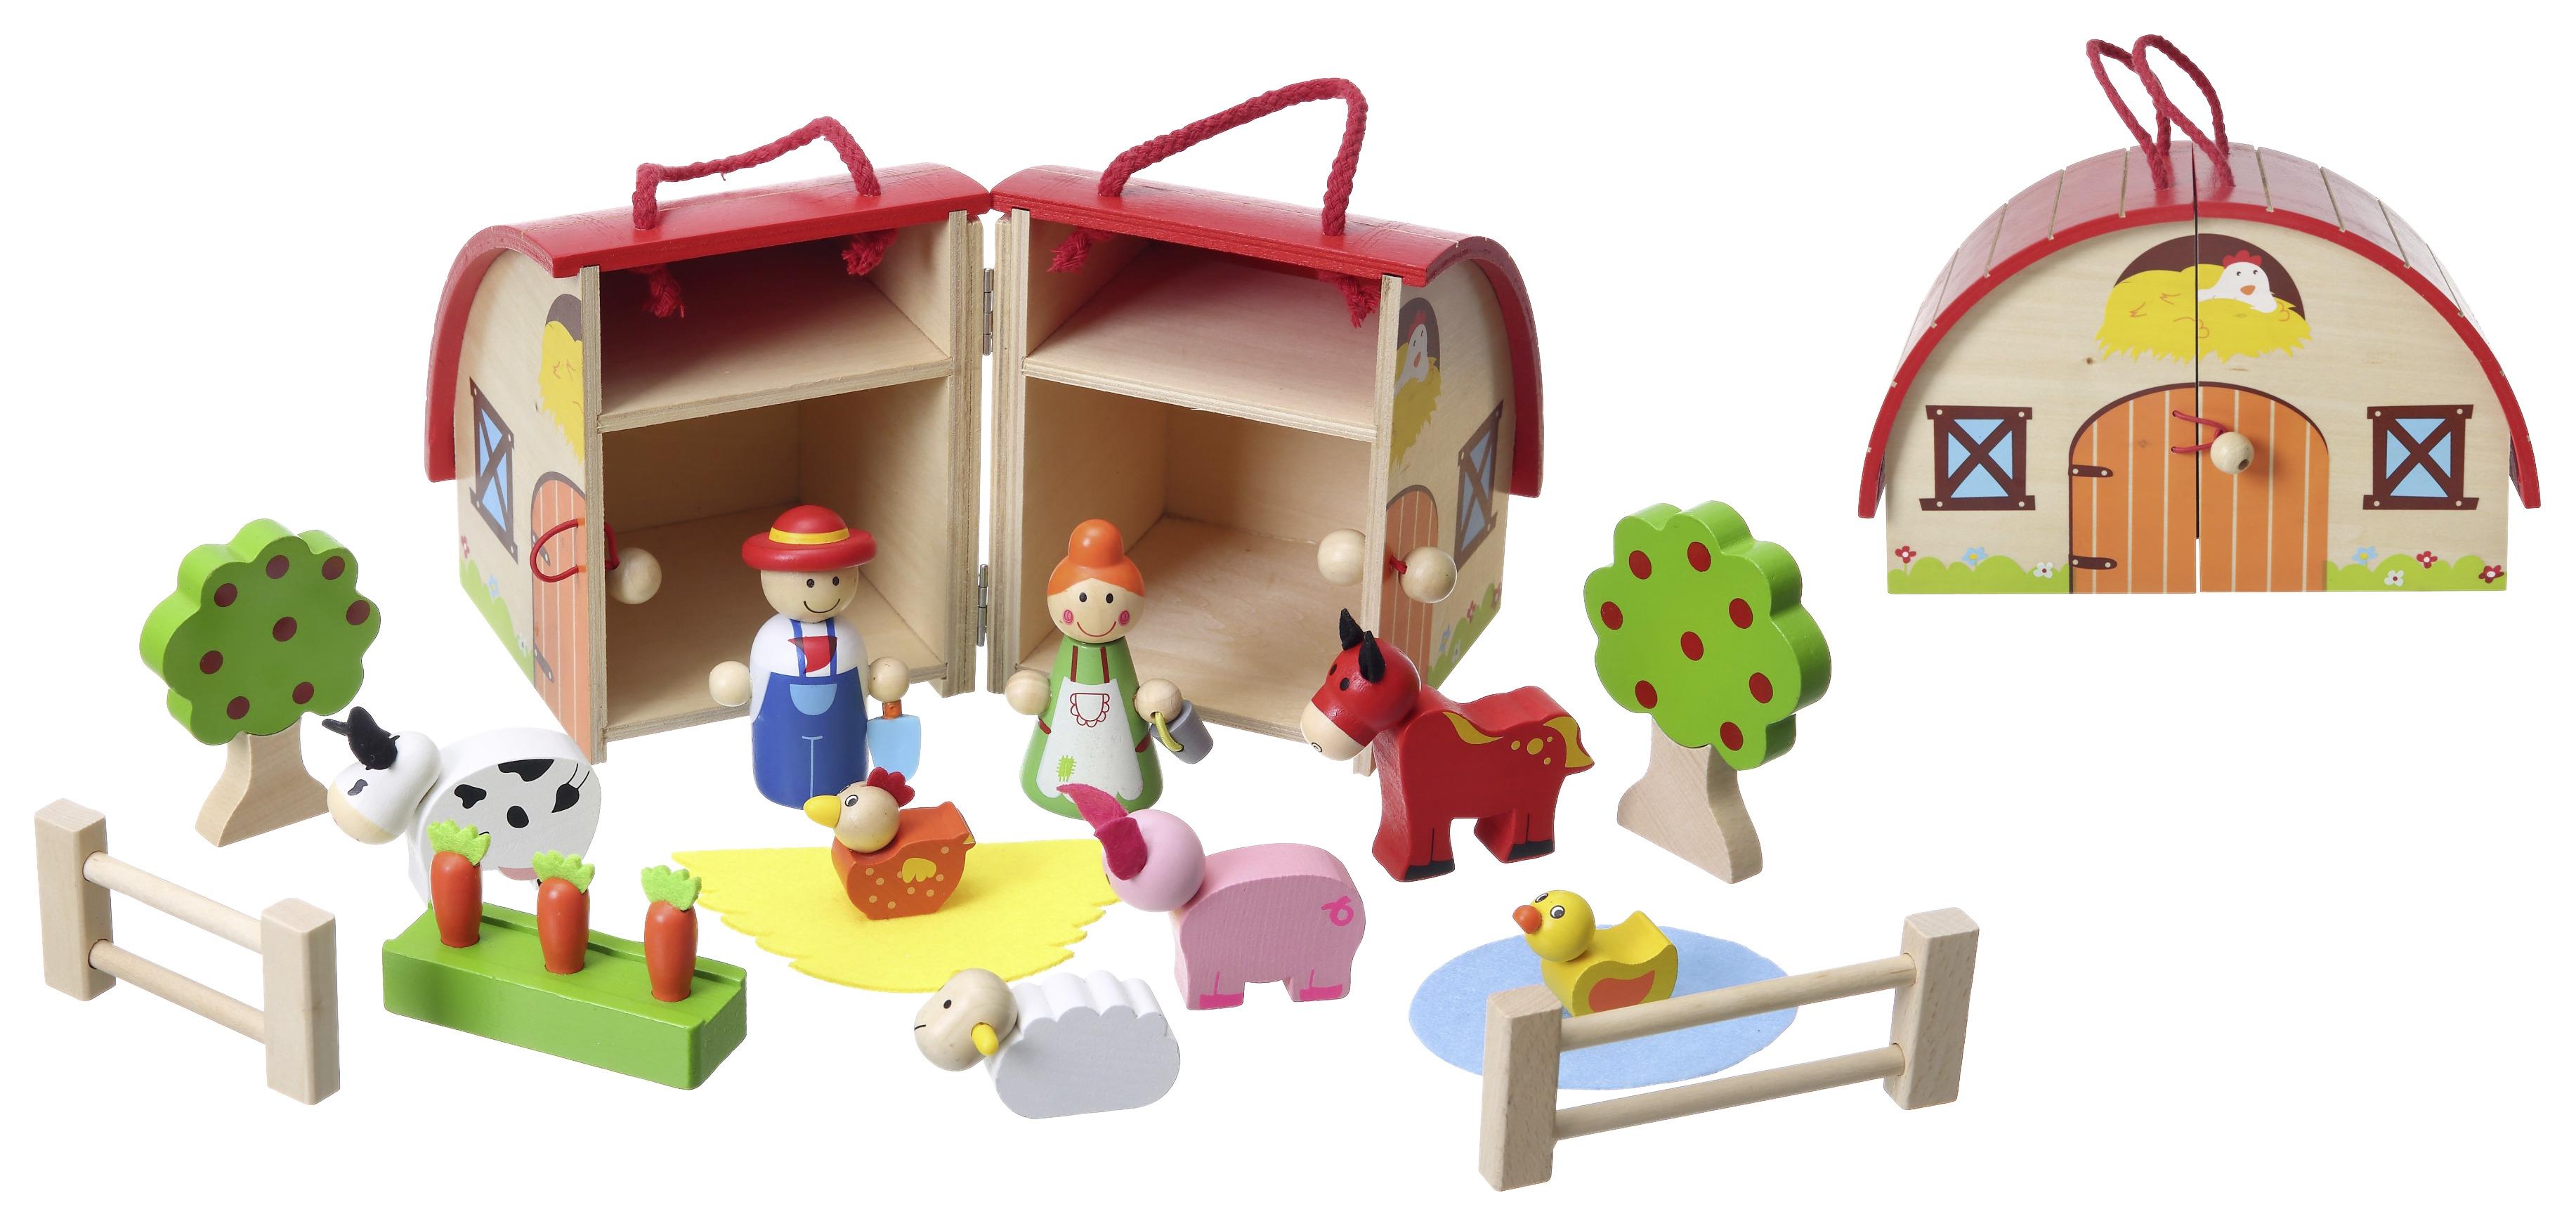 Spielkoffer Bauernhof aus Holz, 16-teilig - Multicolor, Basics, Holz/Textil (24,3/11,6/17cm) - Based